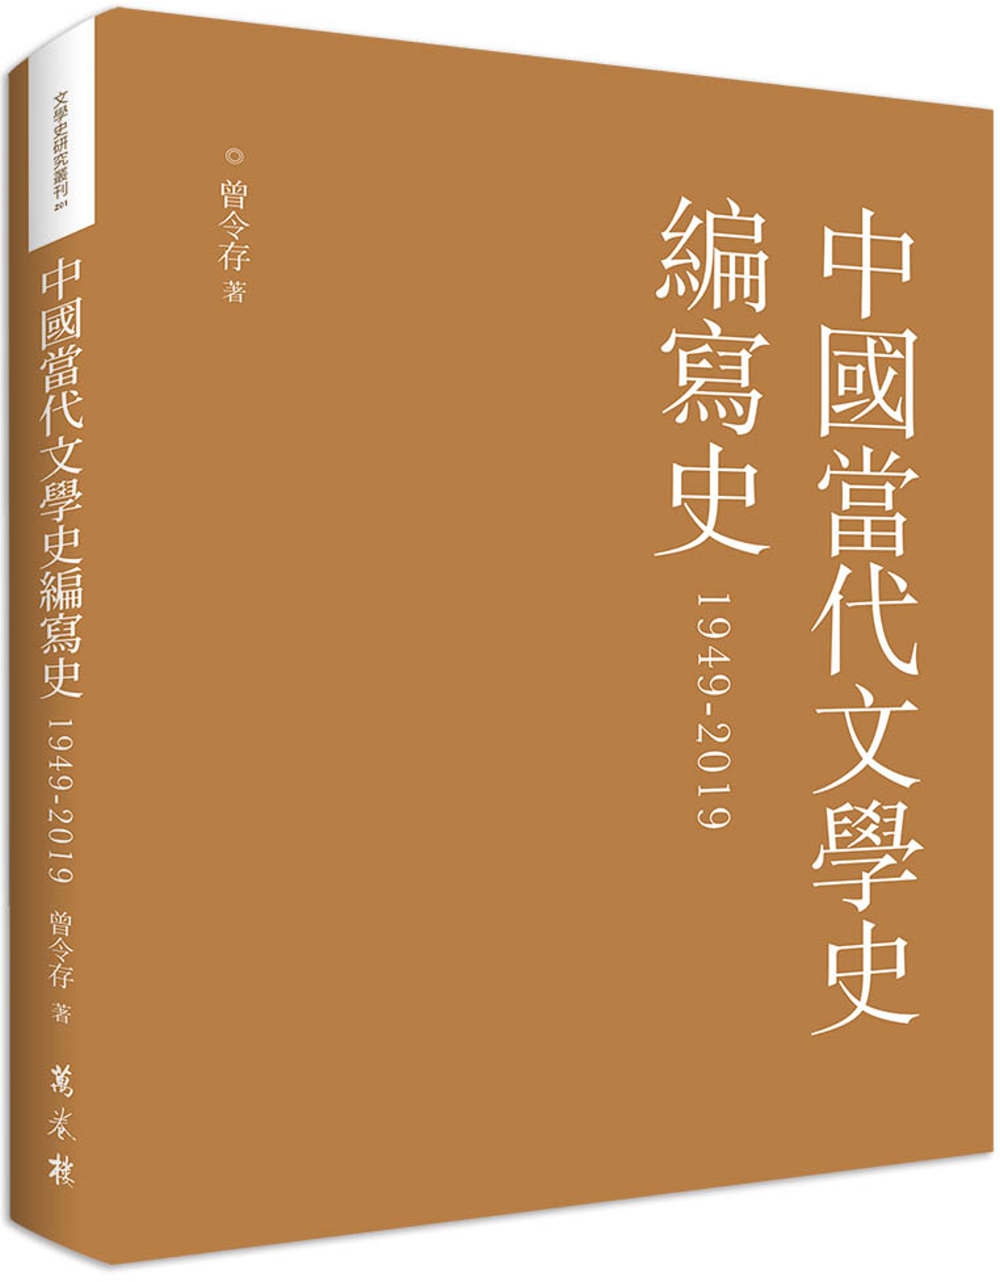 中國當代文學史編寫史1949-2019